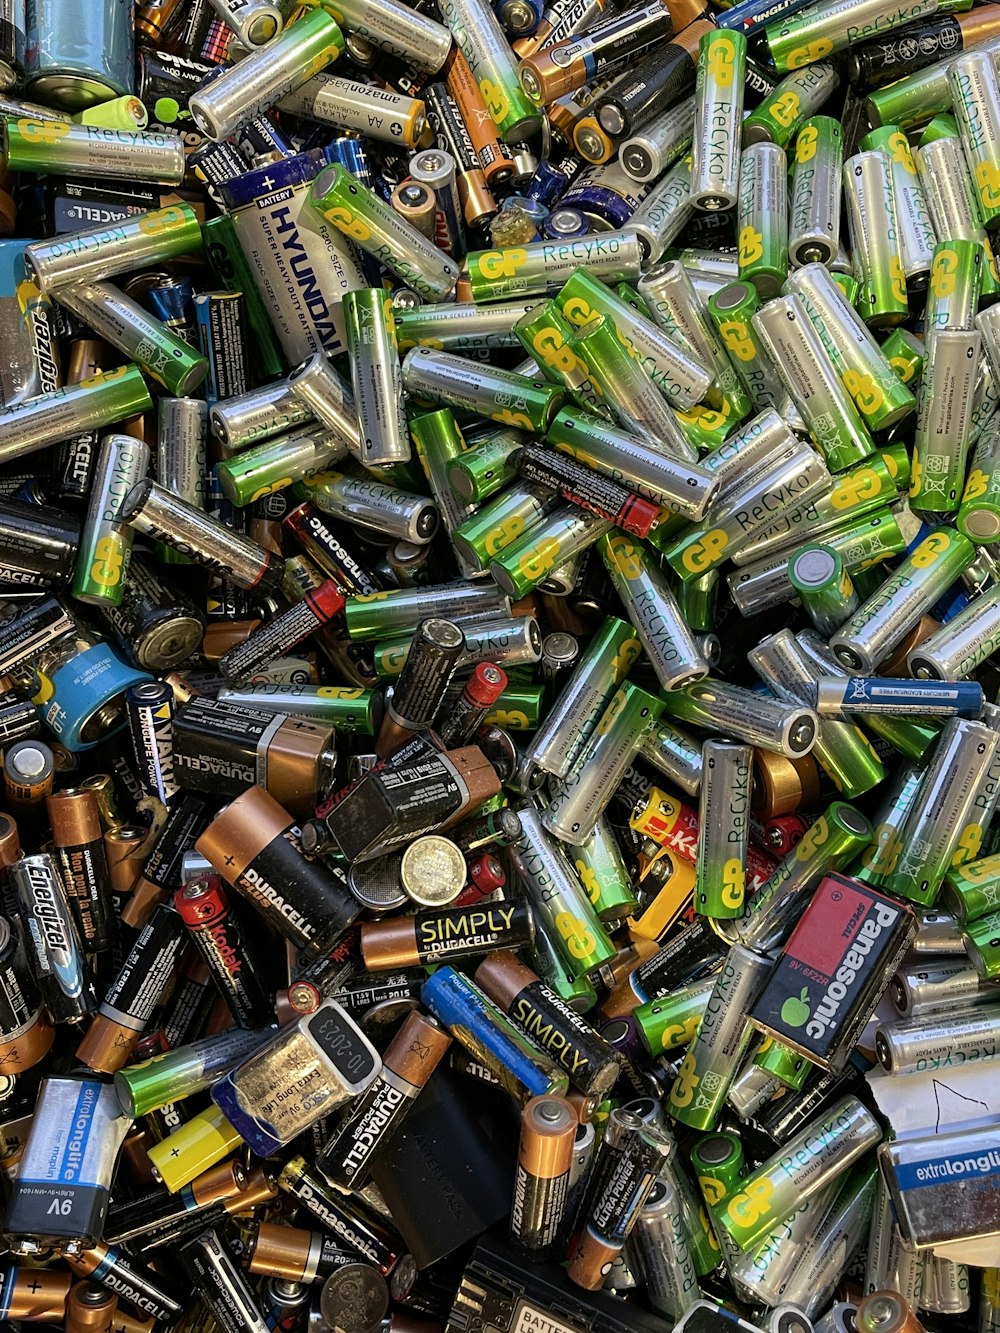 Una pila de baterías que están muy juntas